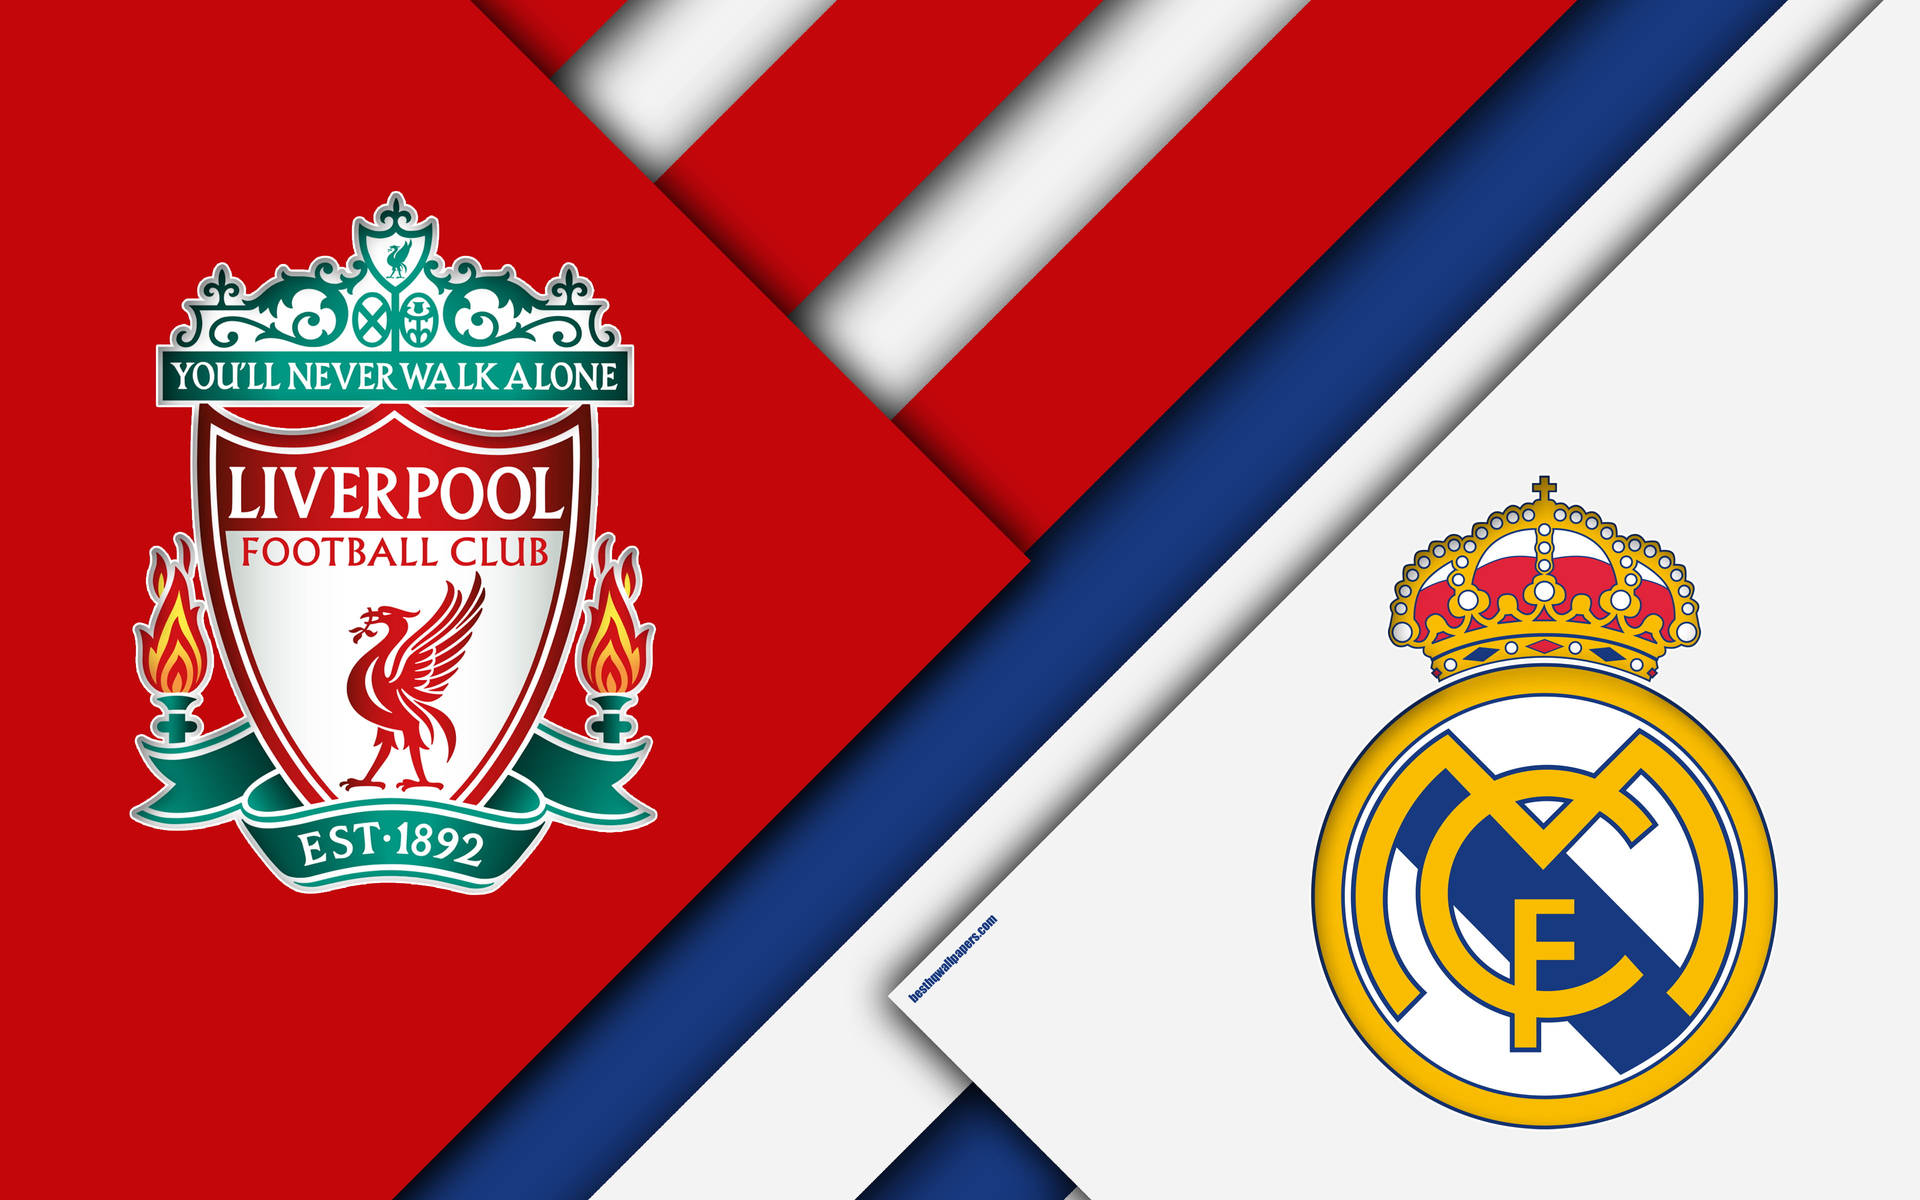 Tải ngay hình nền Real Madrid Liverpool 4k để có được một trải nghiệm trực tiếp về trận đấu hấp dẫn nhất giữa hai đội bóng này. 